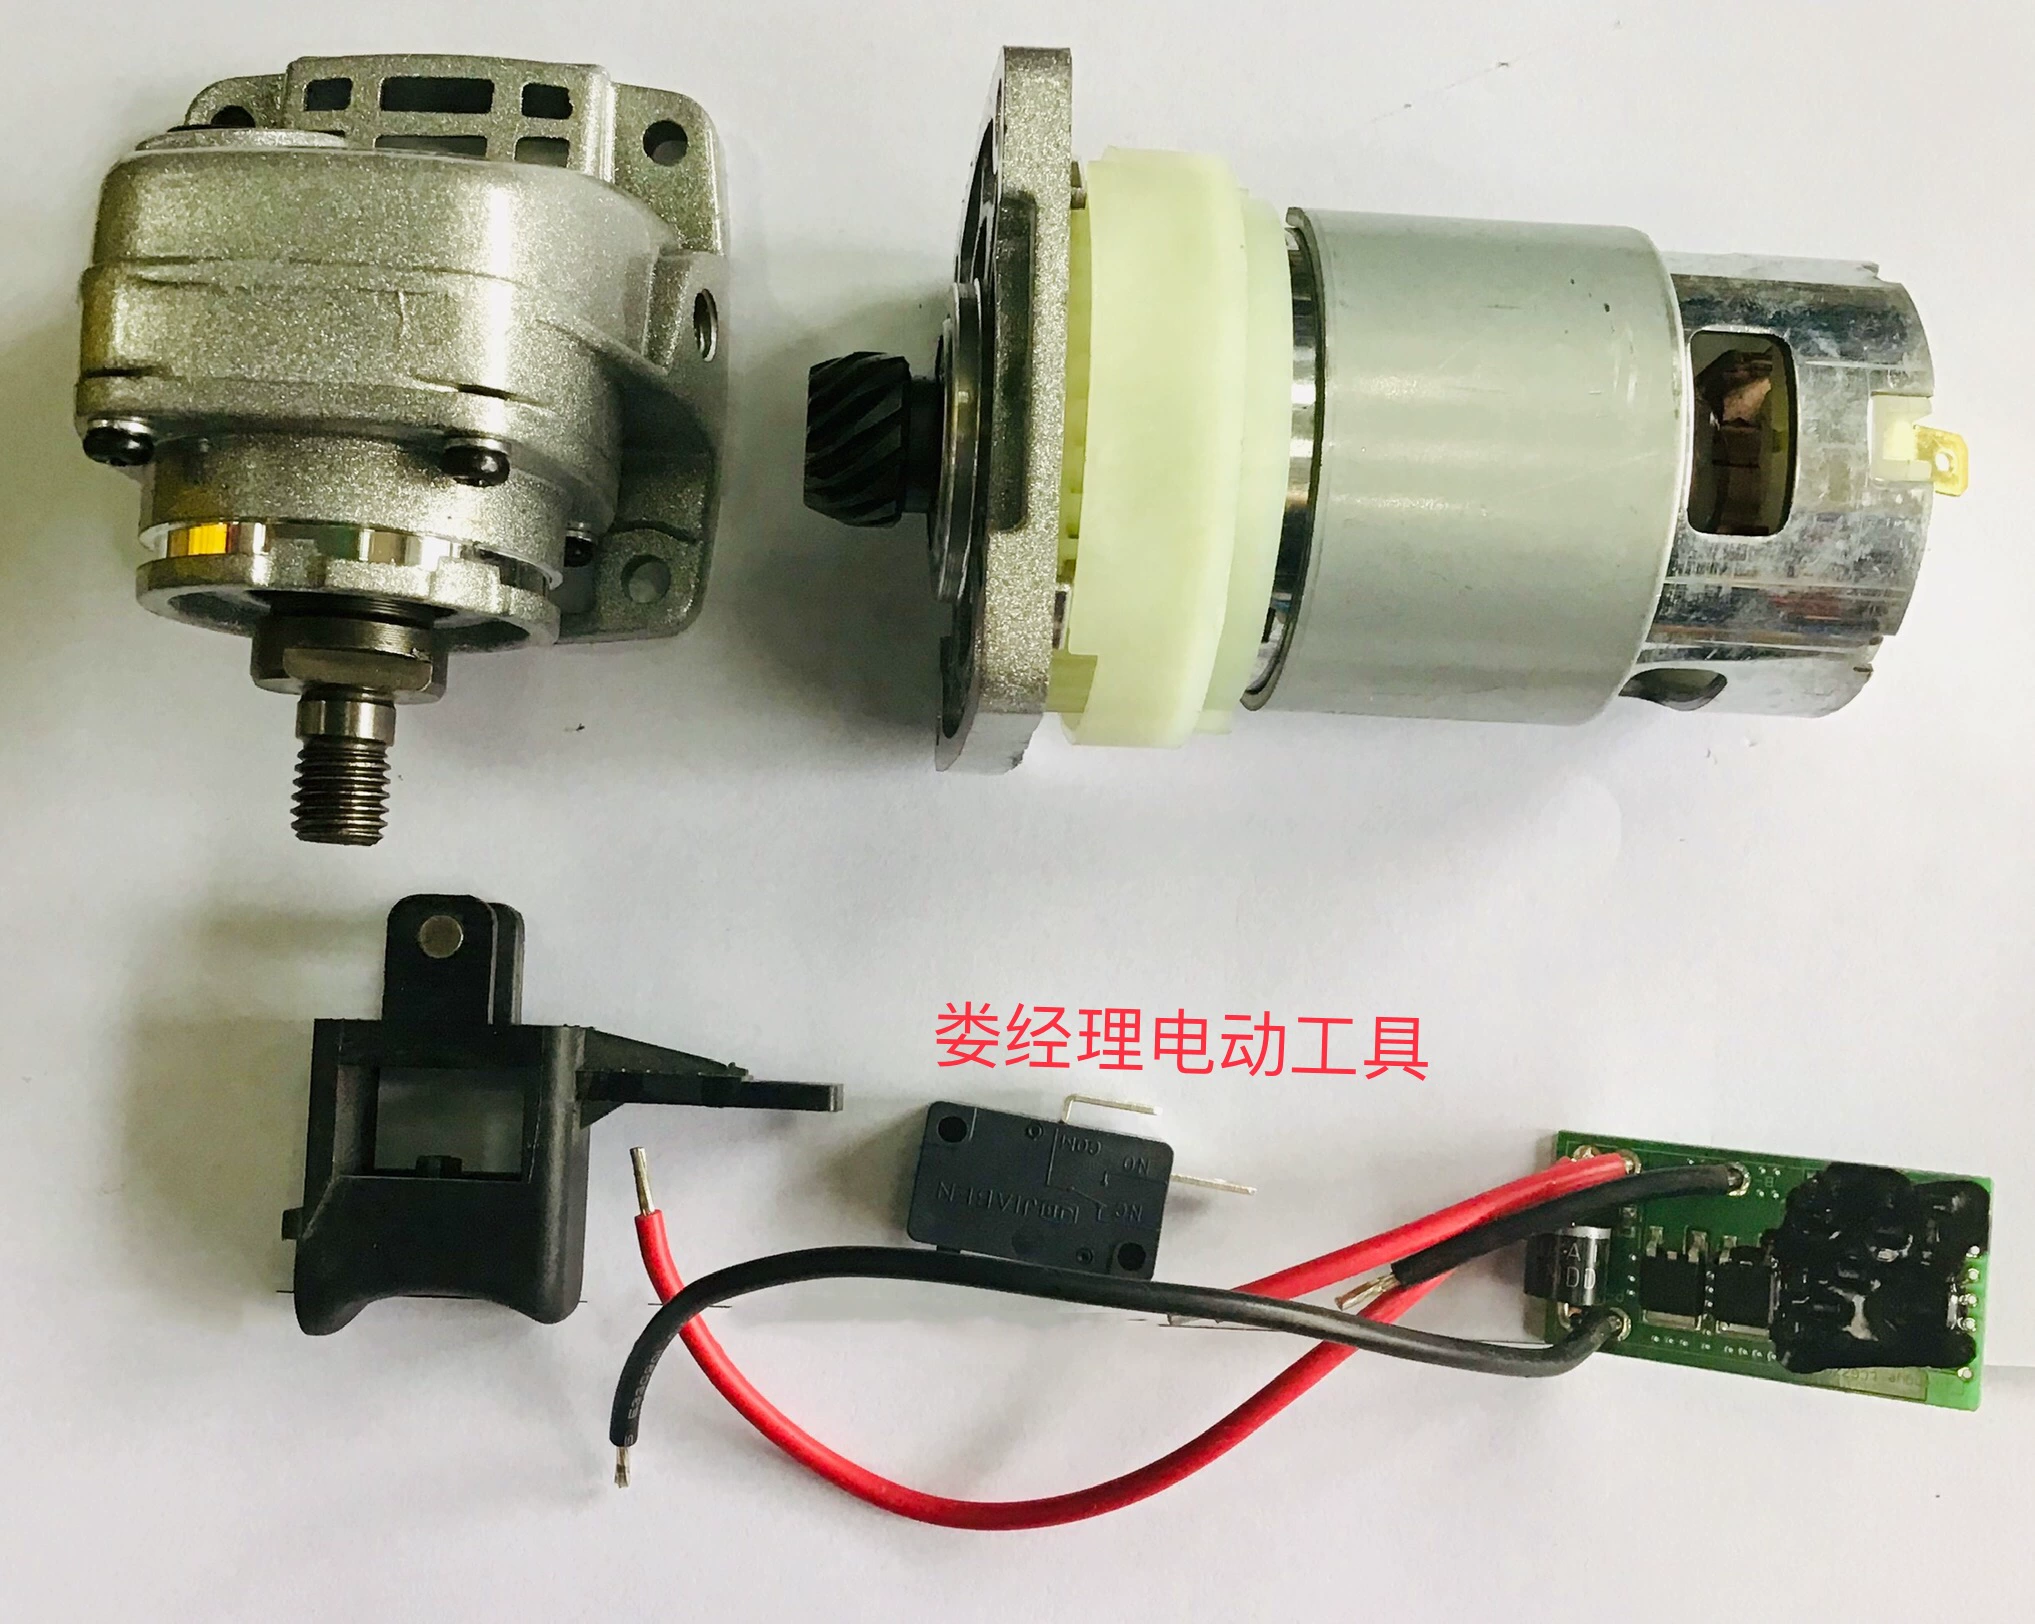 Phụ kiện máy mài góc có thể sạc lại Liangye công cộng Model 100 Dụng cụ điện Liangye 770-1-100 Máy mài góc điện Lithium - Phần cứng cơ điện